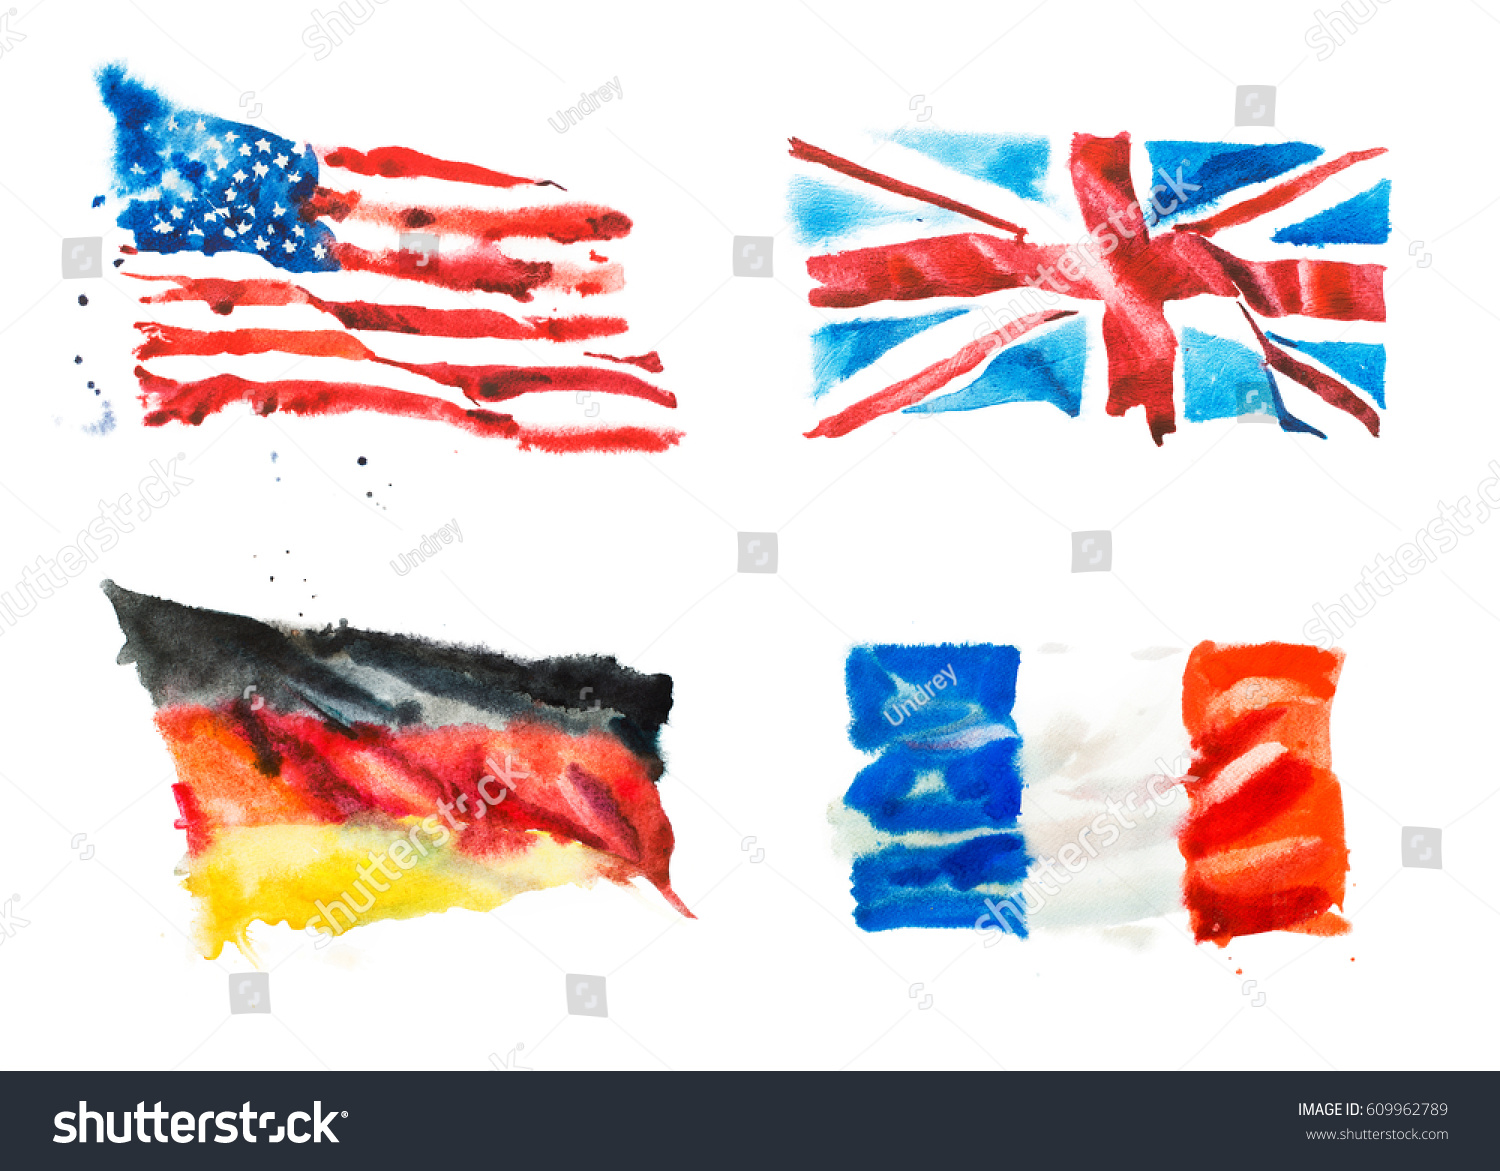 米国 イギリス フランス ドイツの国旗 手描きの水彩イラスト のイラスト素材